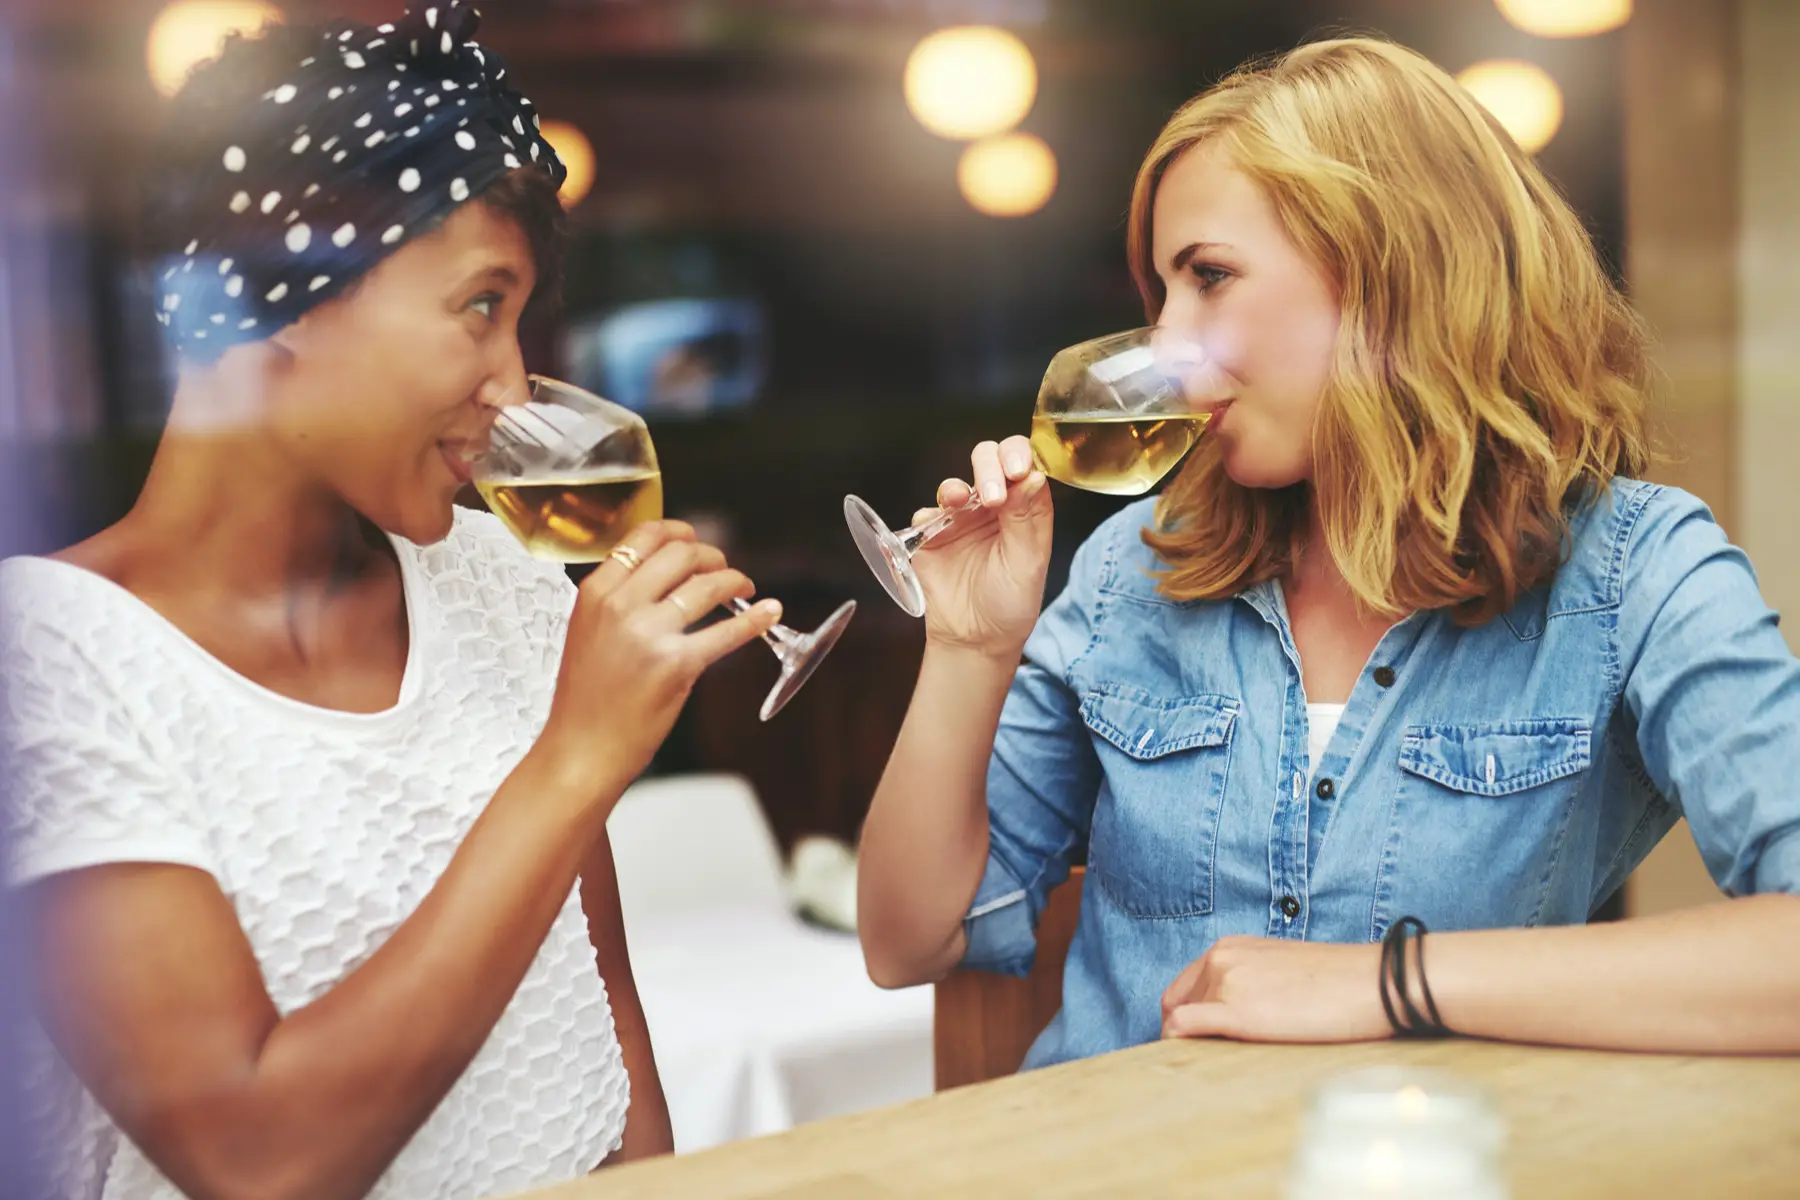 Two friends drinking wine